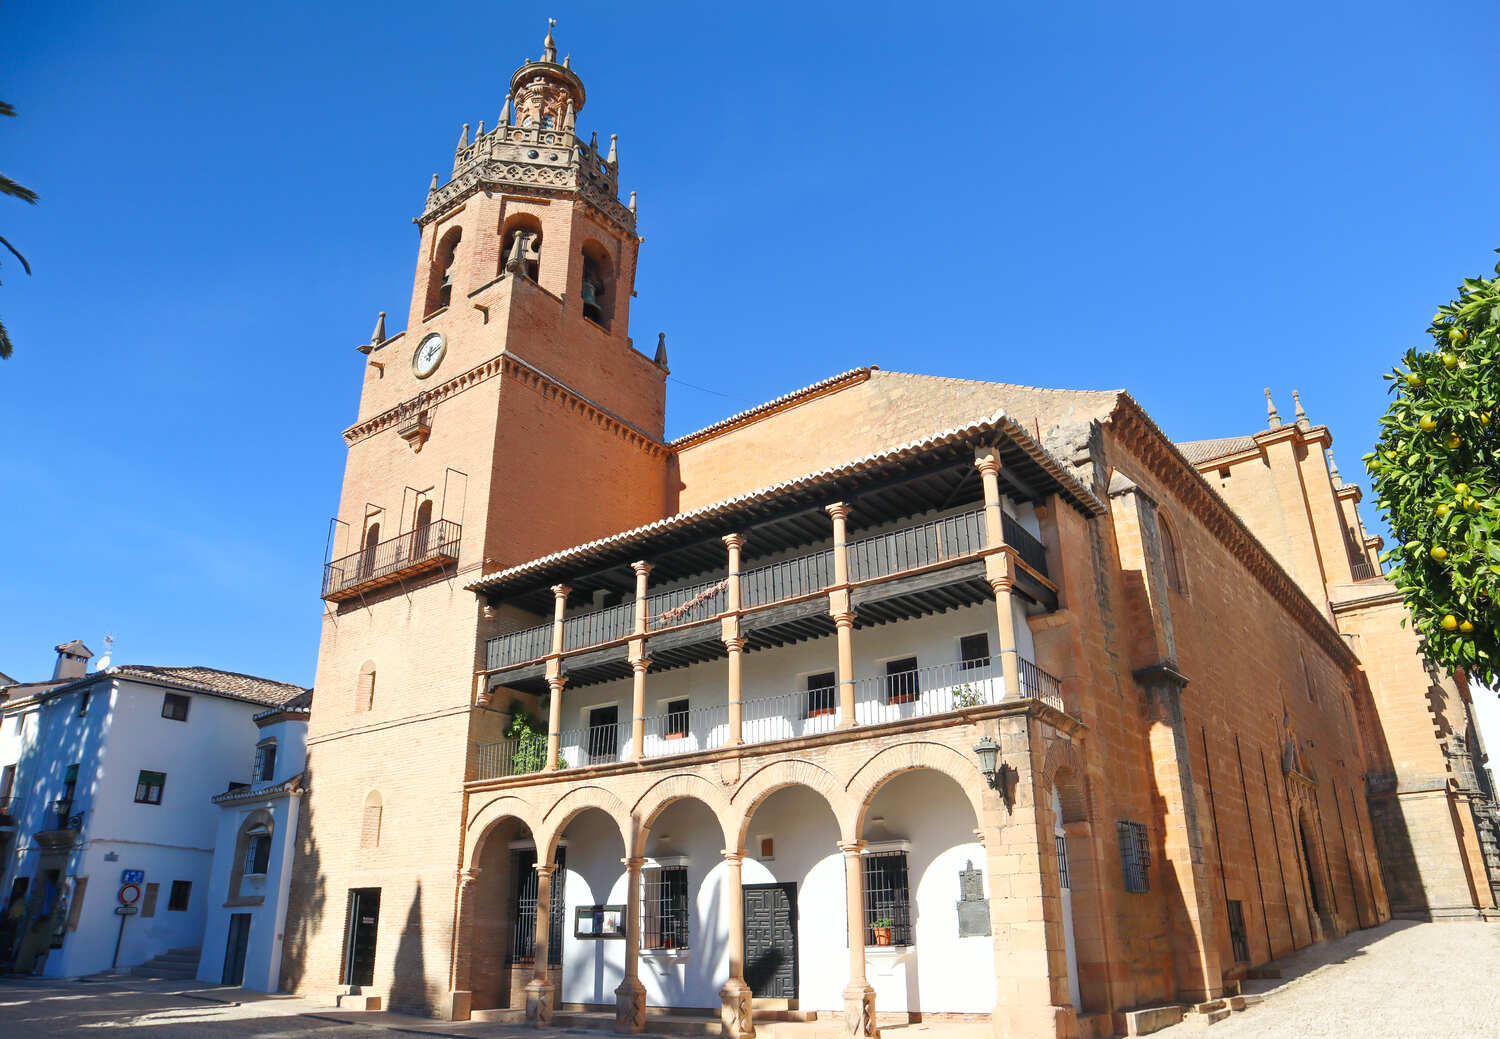 Iglesia-de-Santa-Maria-la-Mayor-in-Ronda